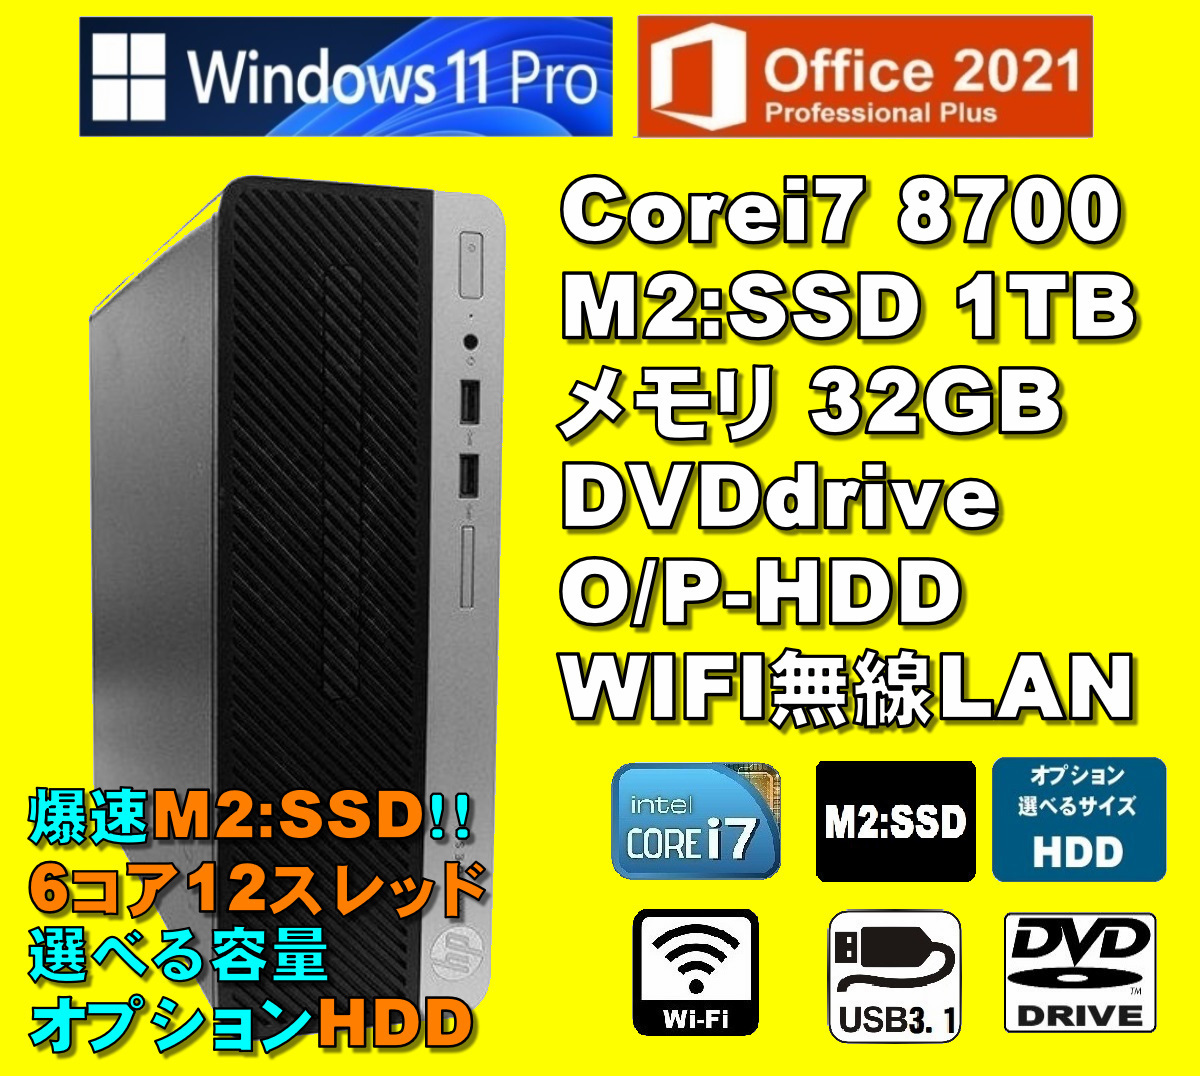 爆速6コア/12スレッド！/ Corei7-8700/ 新品M2:SSD-1TB/ メモリ-32GB/ OPHDD/ DVD/ WIFI/ Win11/ Office2021/メディア15/ 税無/ 即納_画像1